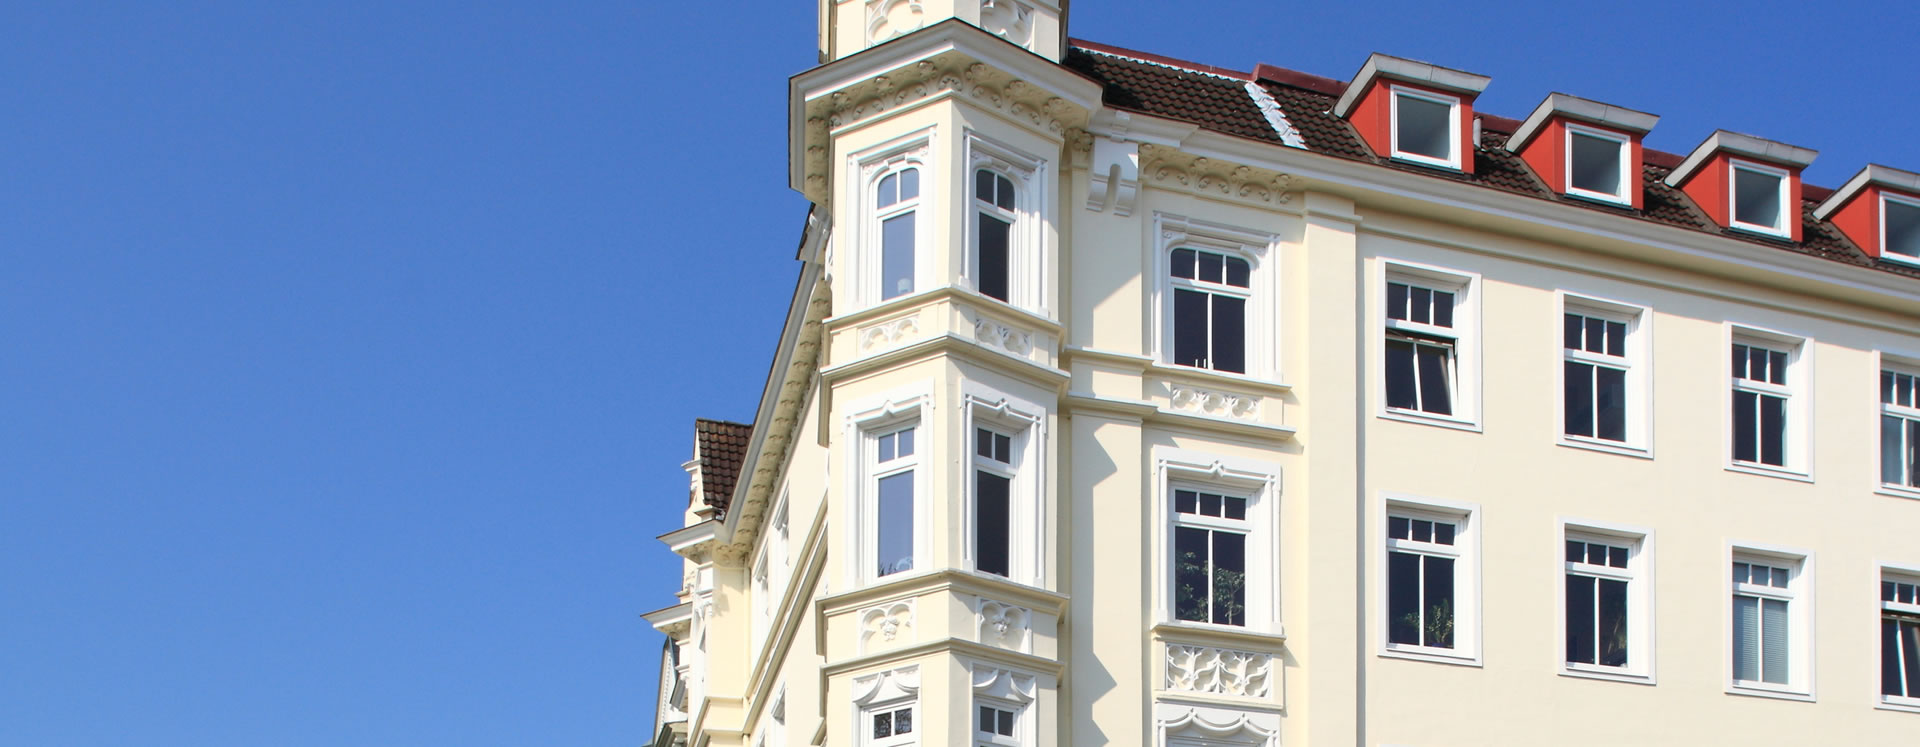 Immobilienbewertung Haus verkaufen Sachsen